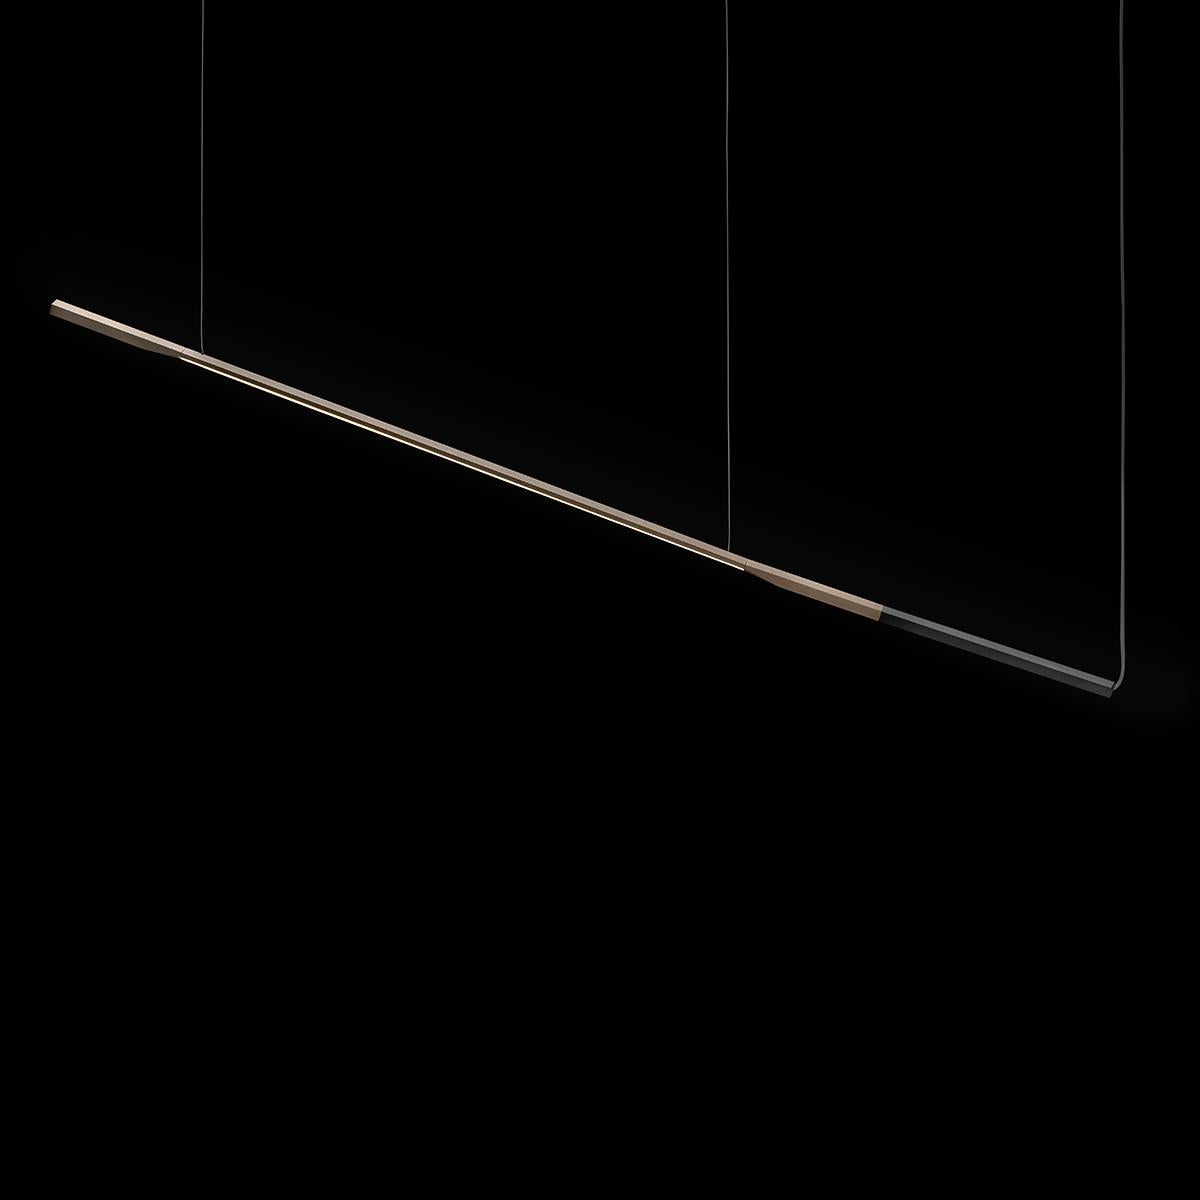 Suspension 'Ilo' créée par David Lopez Quincoce en 2019.
Lampe à suspension à lumière directe en métal. Structure de la tige en aluminium anodisé en bronze satiné avec terminal en noir mat anodisé. Fabriqué par Oluce, Italie.

La gamme Ilo, conçue